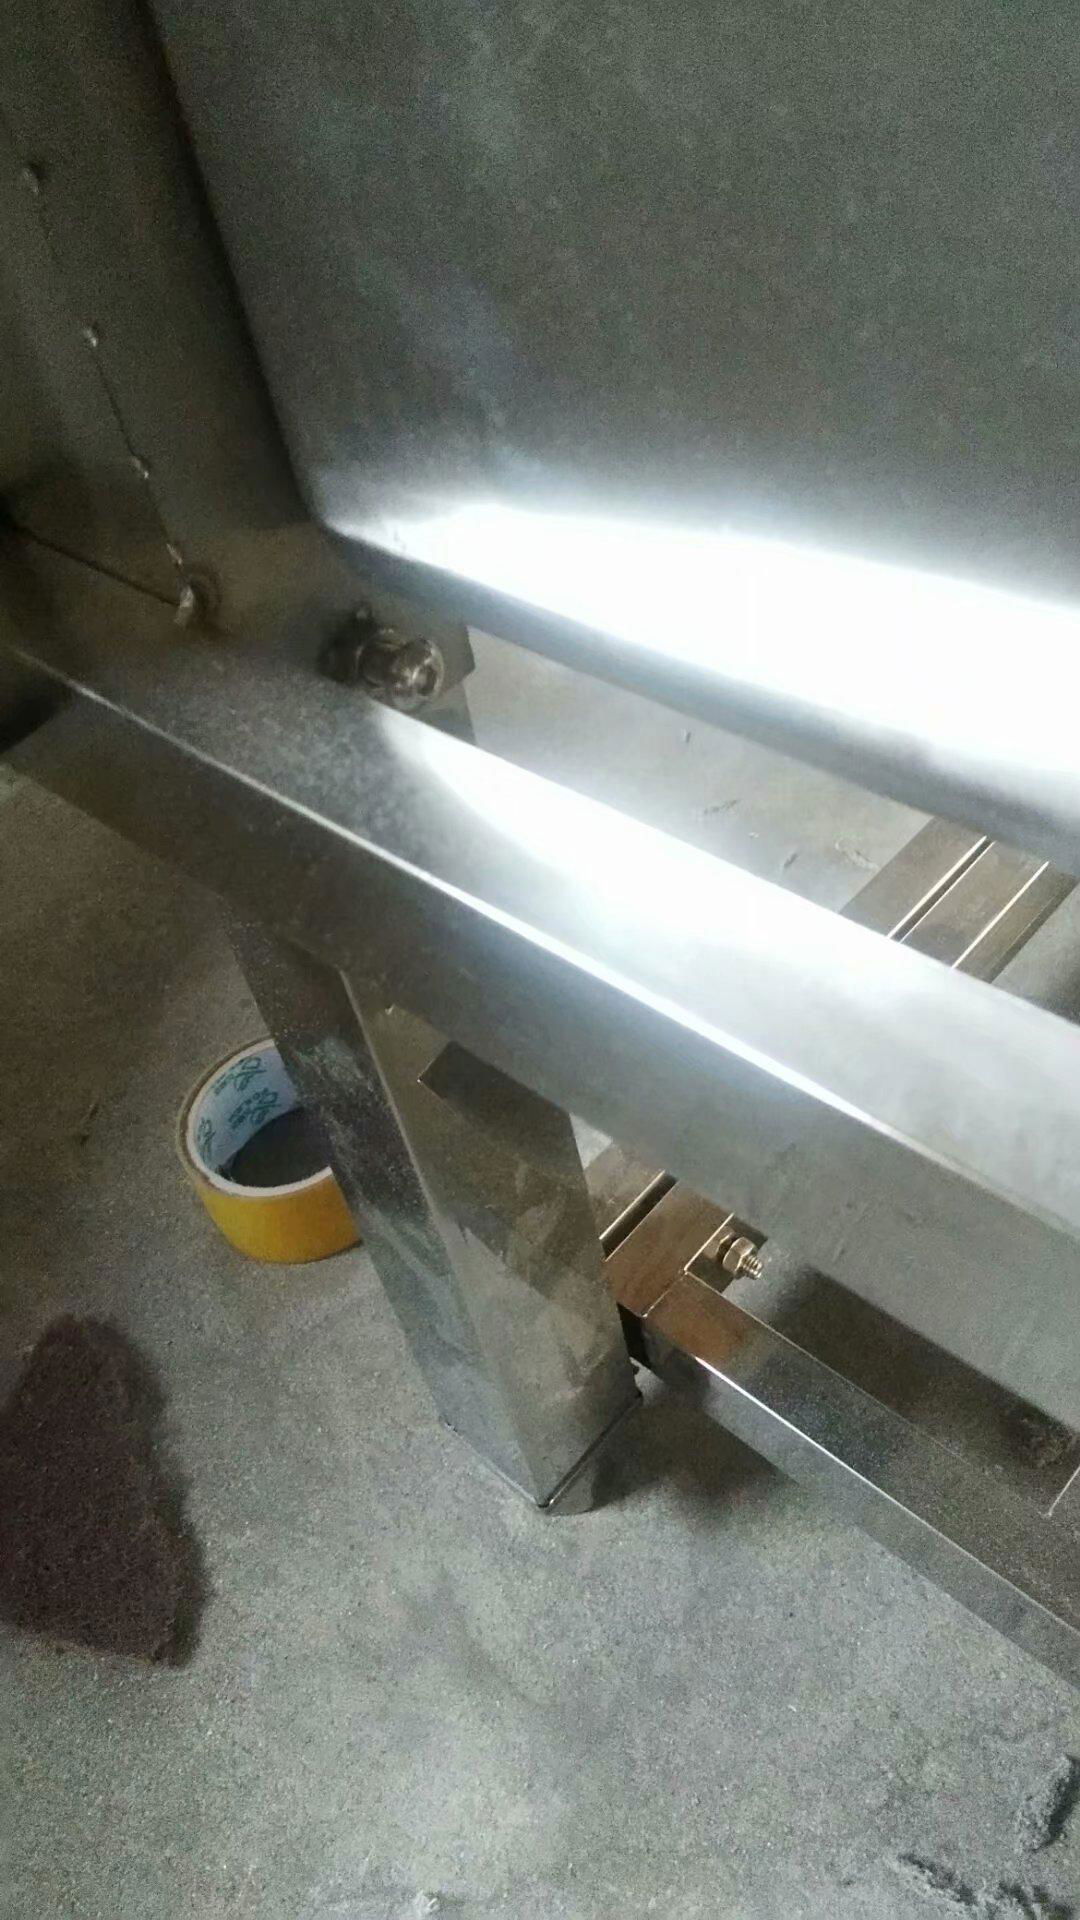 stainless steel kitchen sink 4